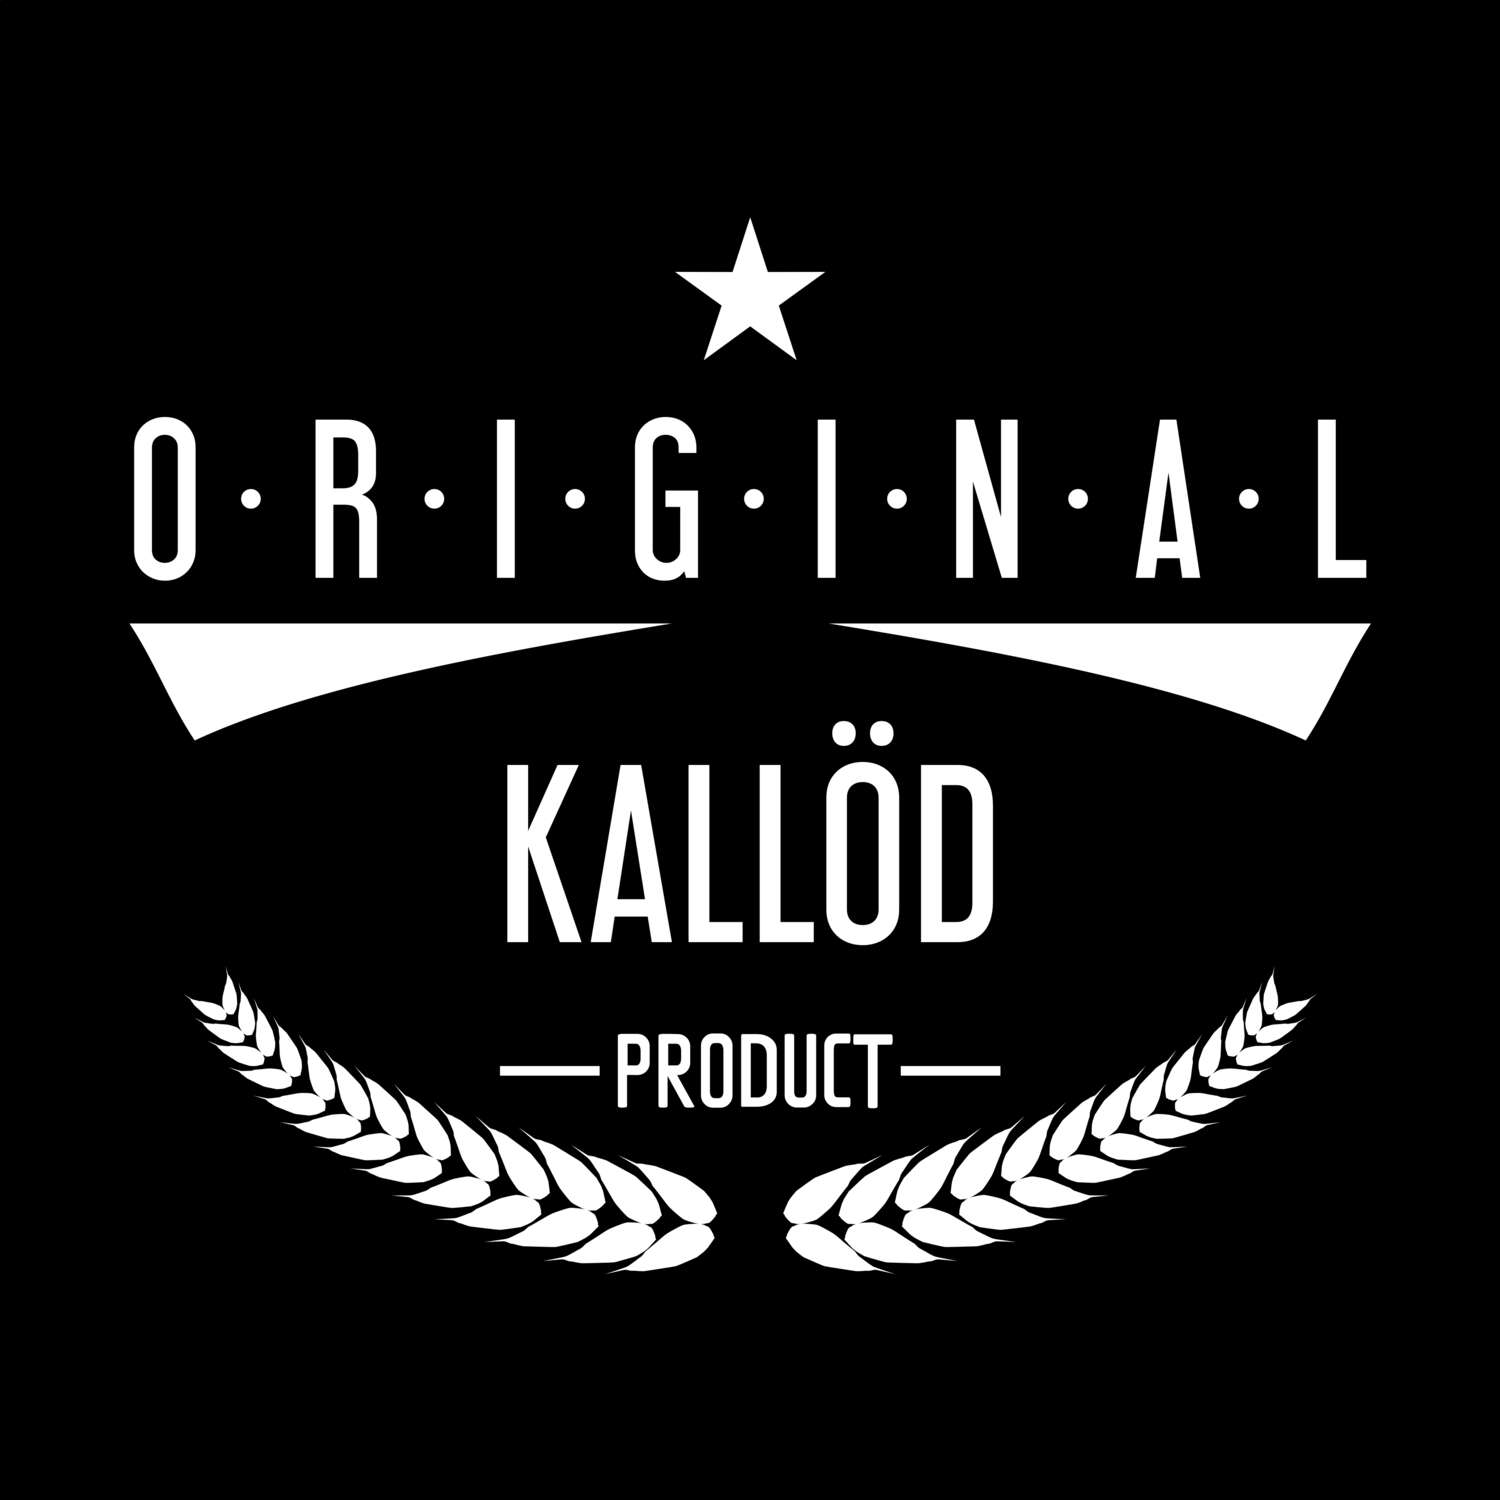 Kallöd T-Shirt »Original Product«